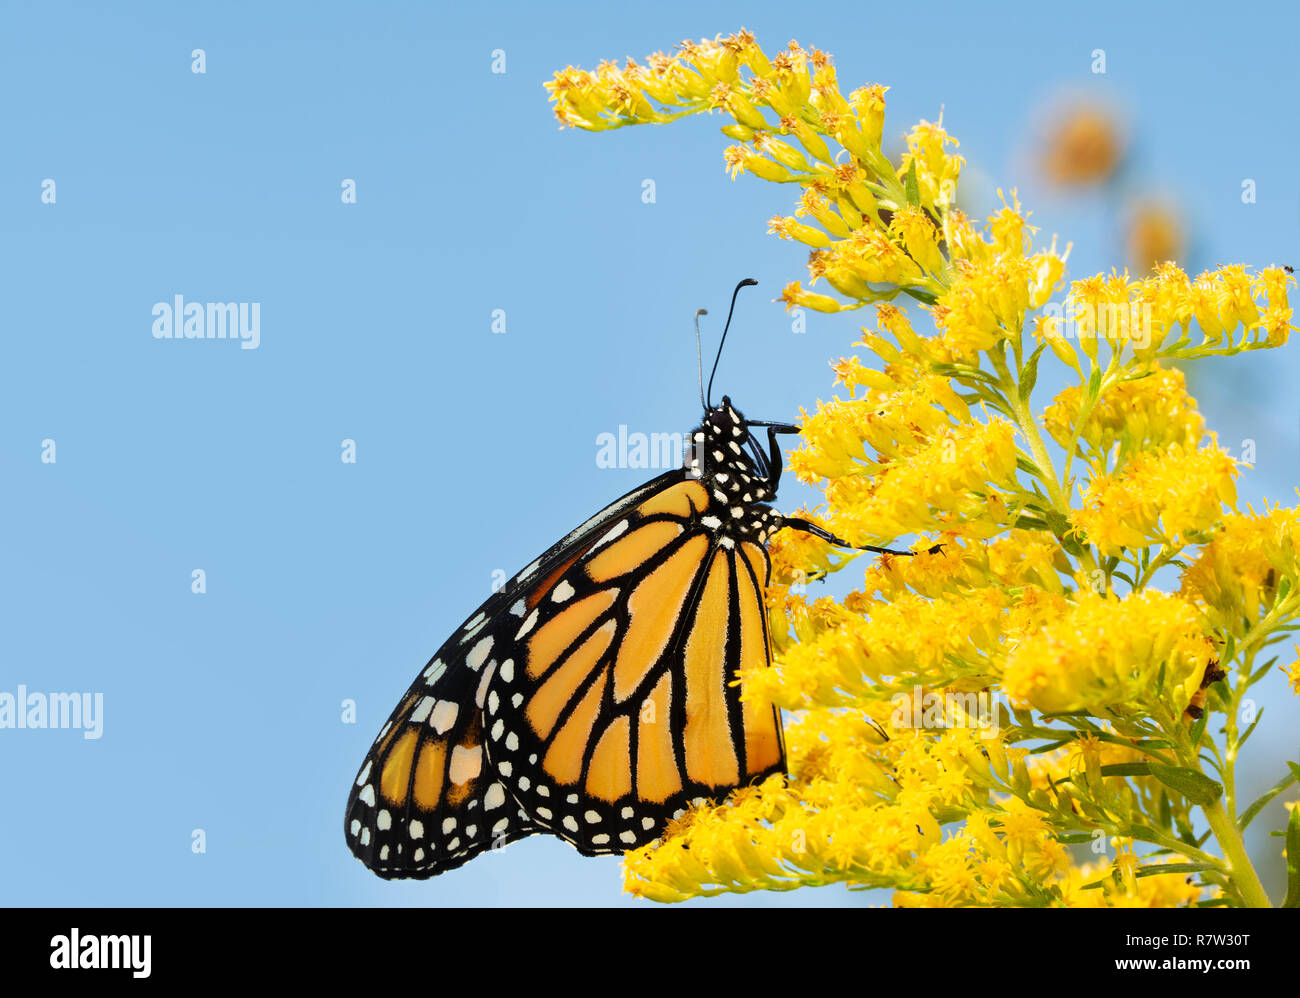 Papillon monarque sur la verge d'une fleur en automne, contre le ciel bleu Banque D'Images